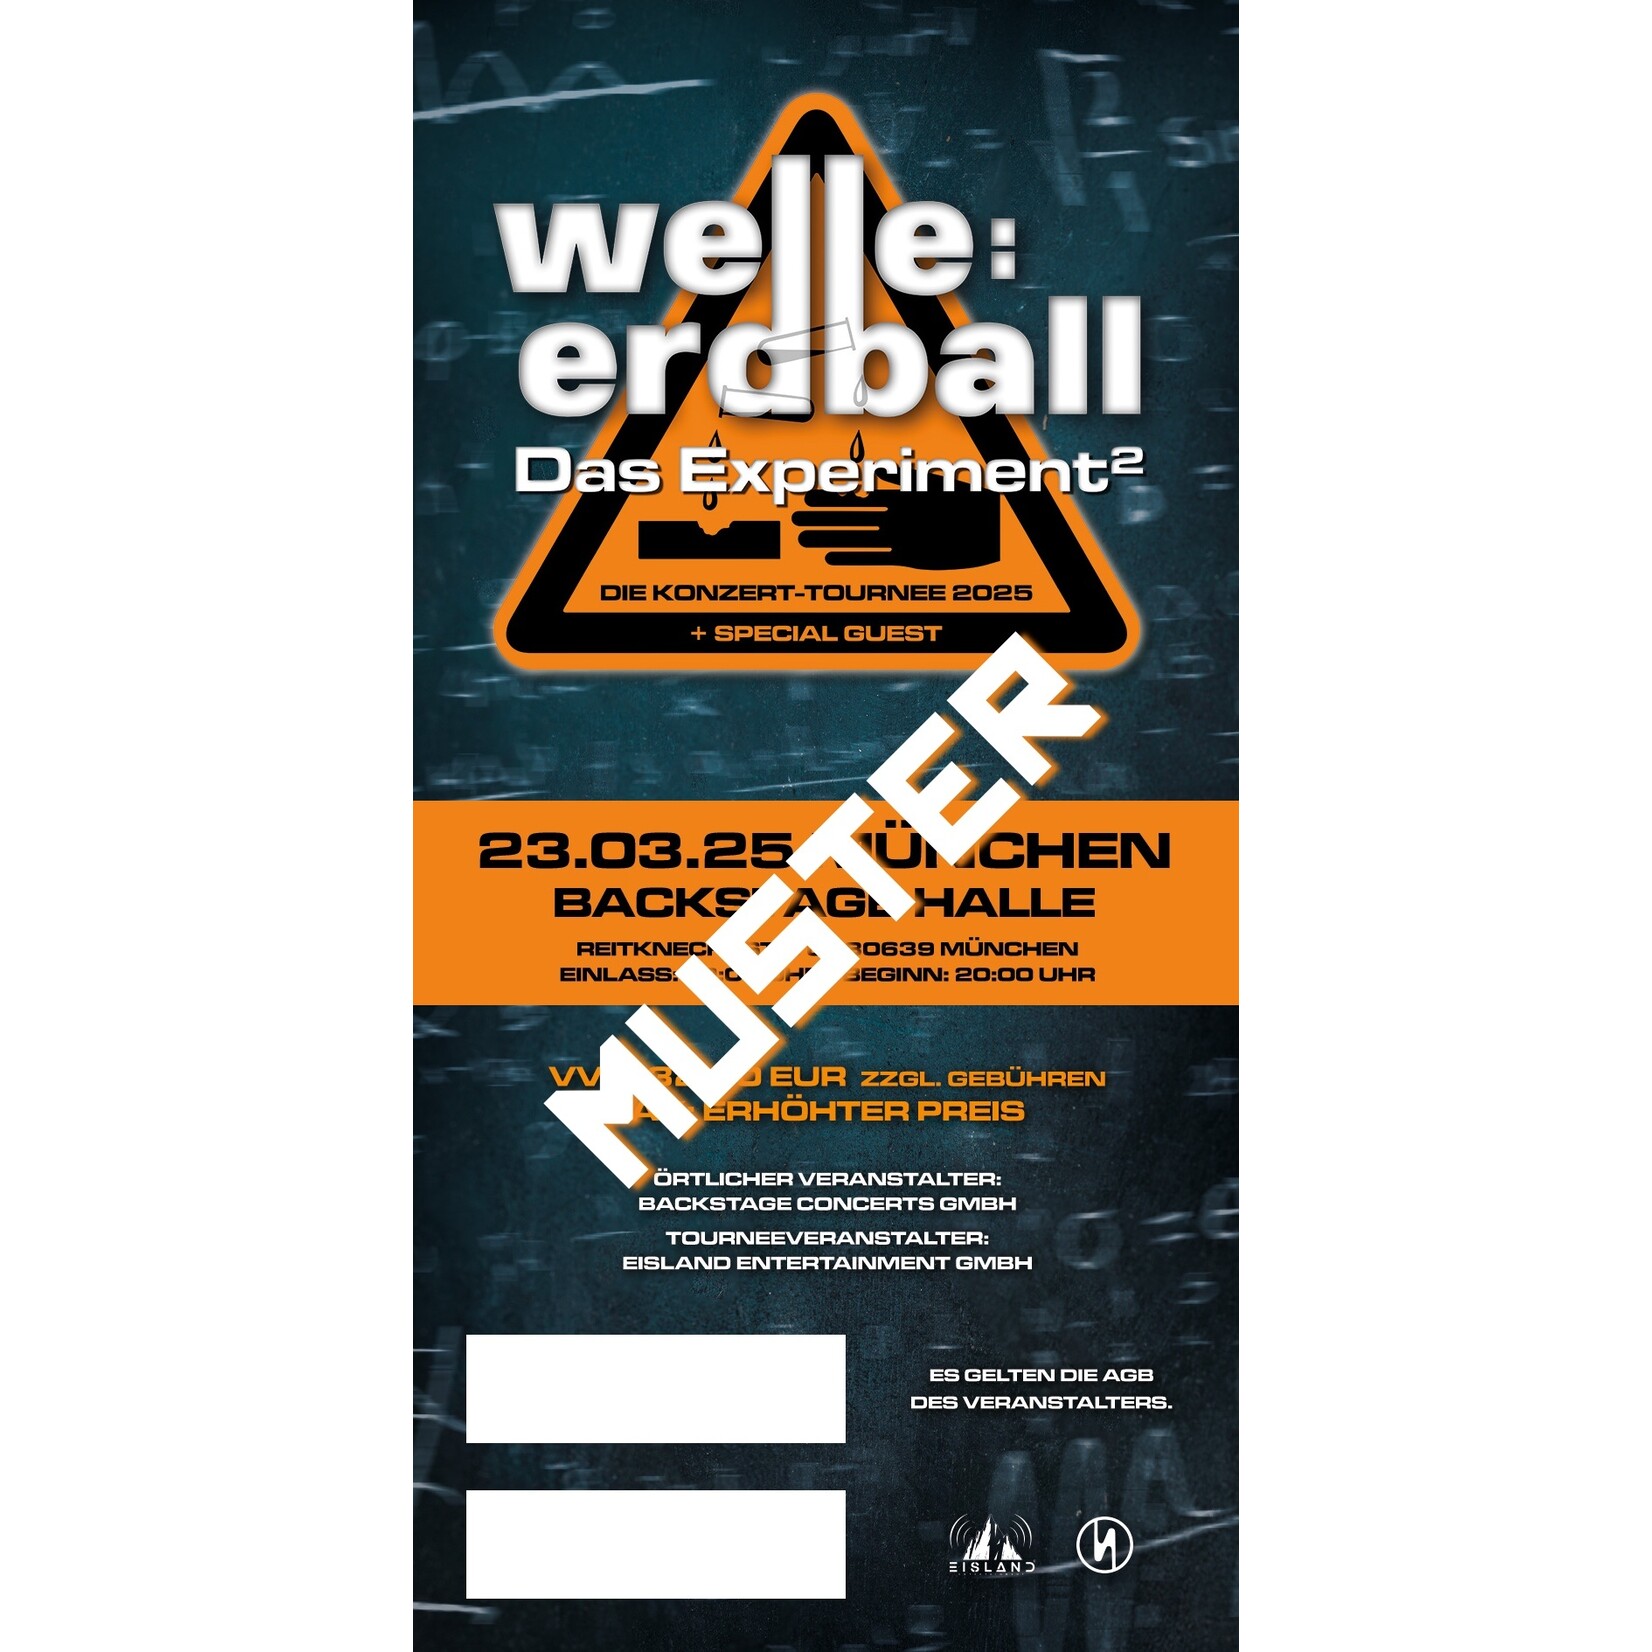 23.03.2025 - MUNICH - WELLE:ERDBALL - DAS EXPERIMENT²